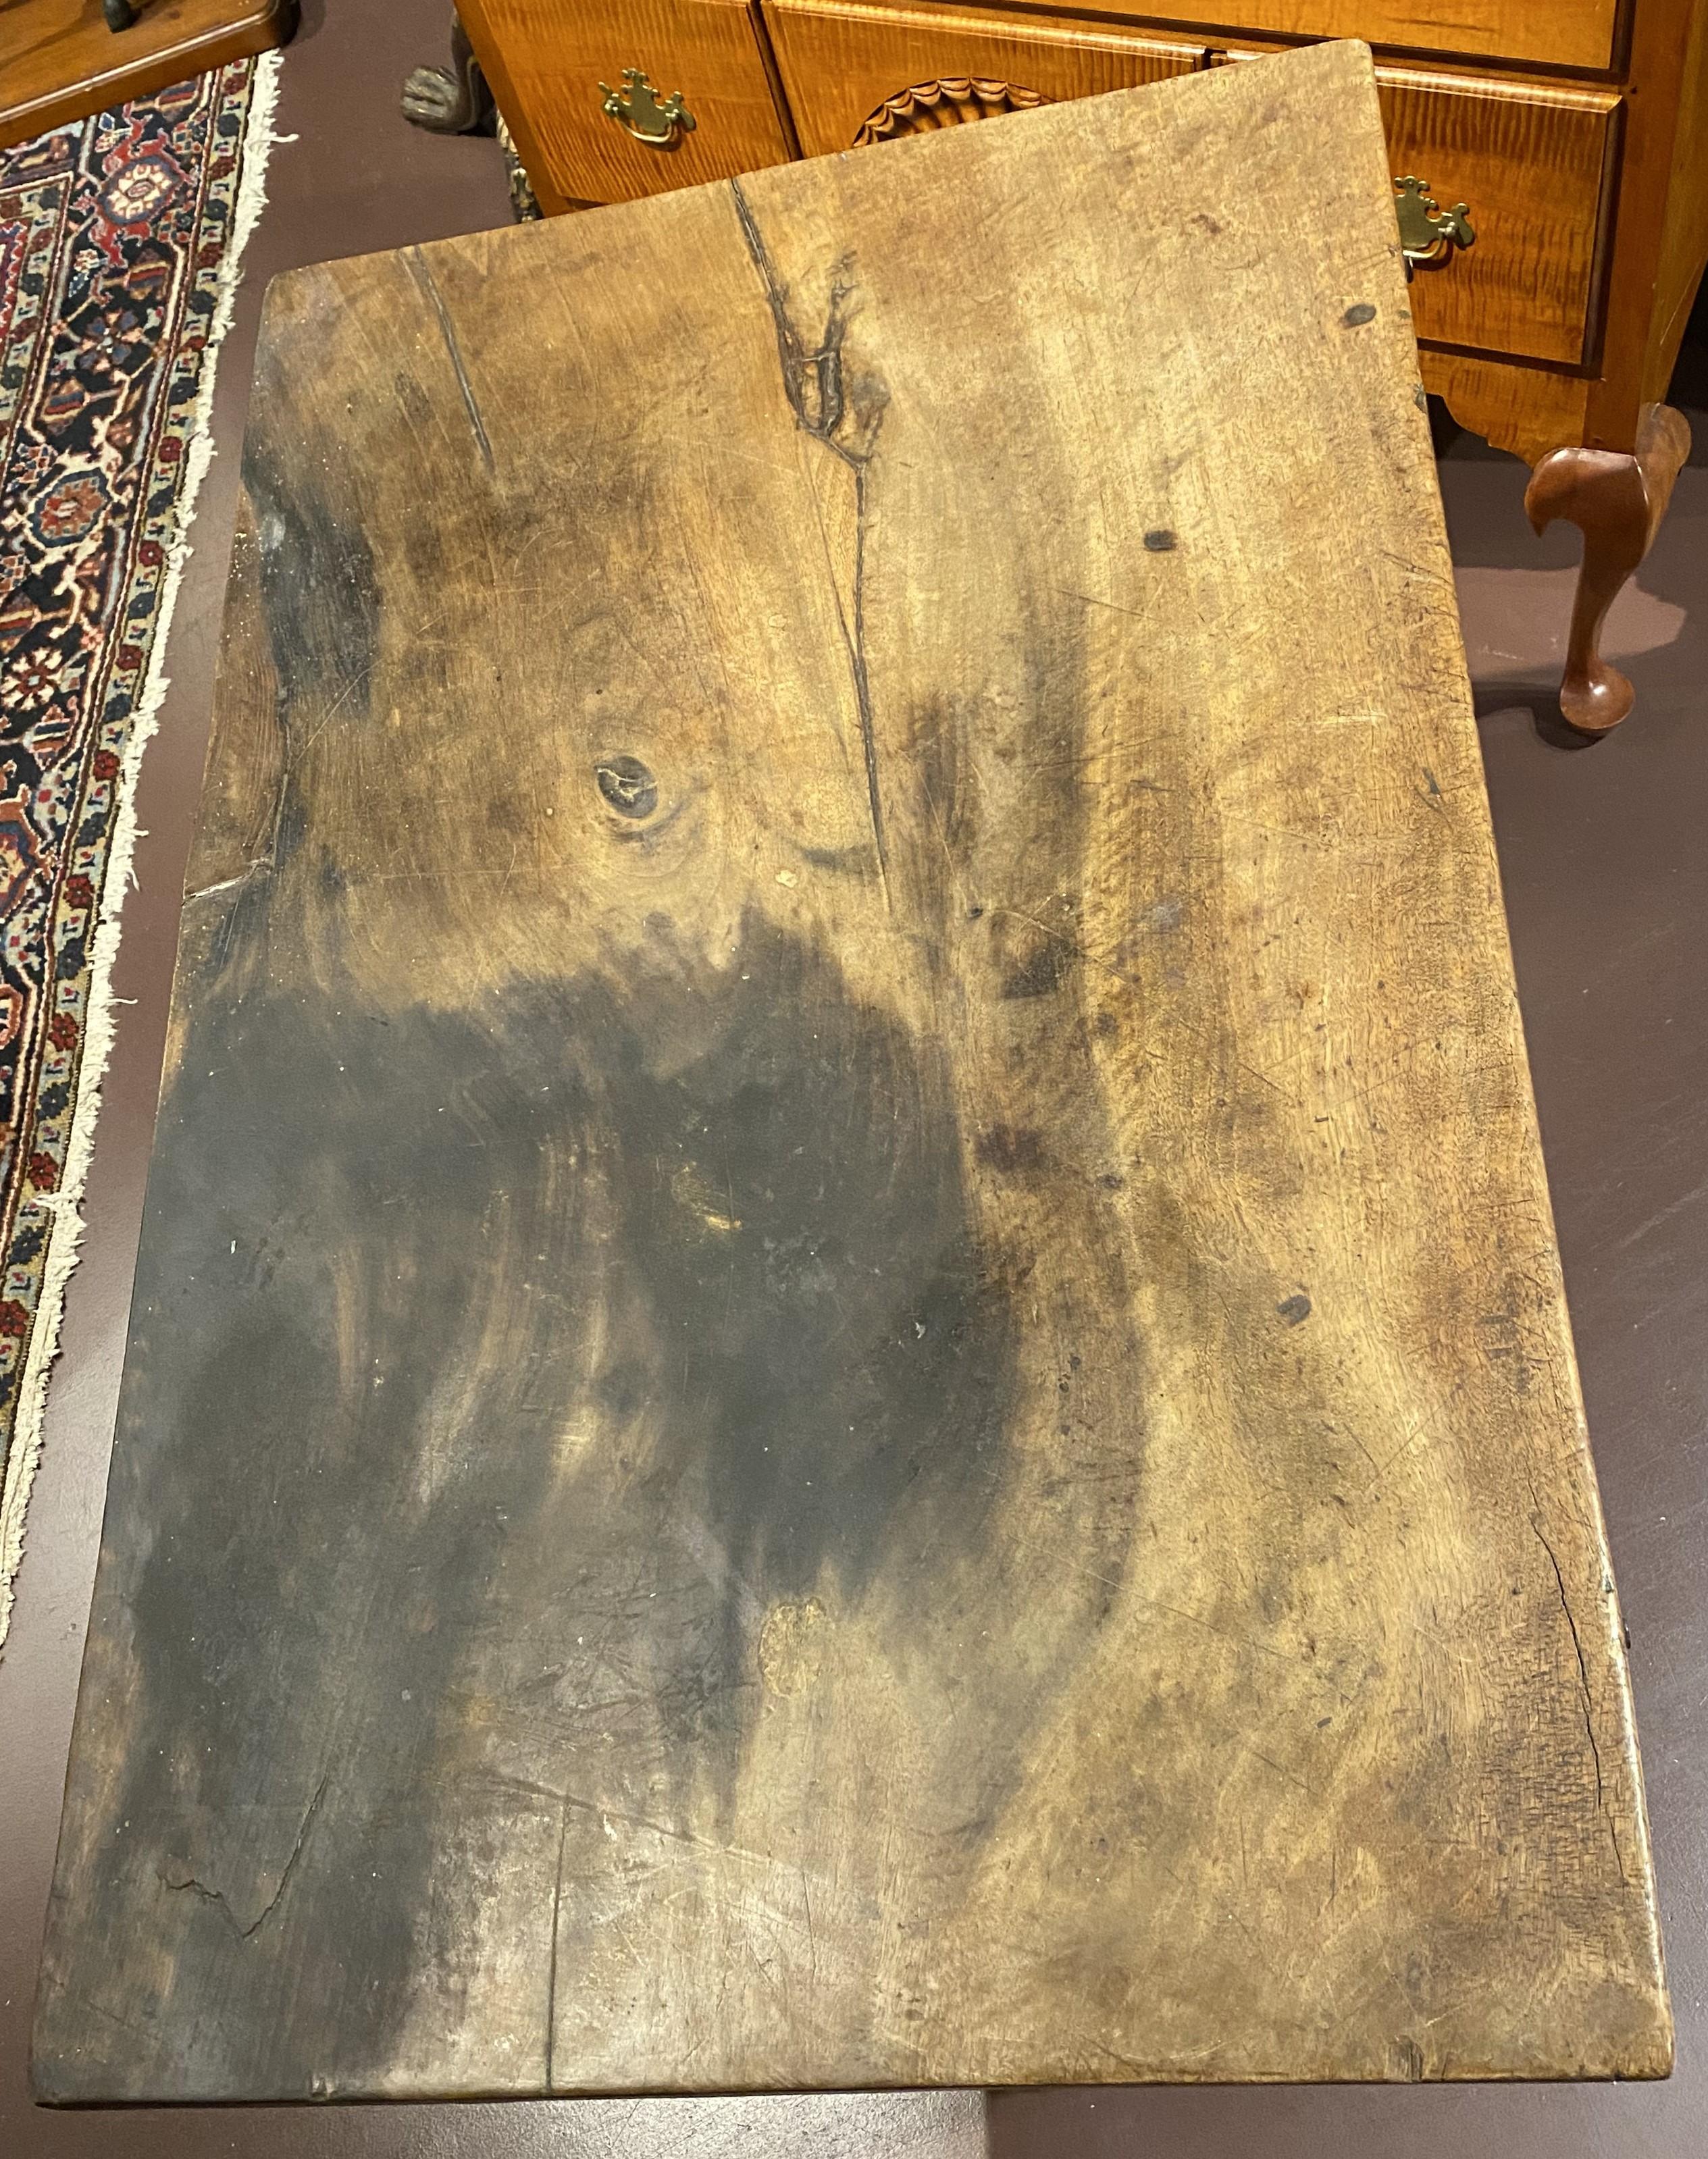 Ein gutes Beispiel für einen spanischen Kolonialbarocktisch mit zwei Schubladen aus massivem Nussbaumholz, mit originalen Schlossbeschlägen, Zapfenkonstruktion, gedrechselten Beinen und kräftigen Basisträgern. Datiert auf das 18. Jahrhundert in sehr